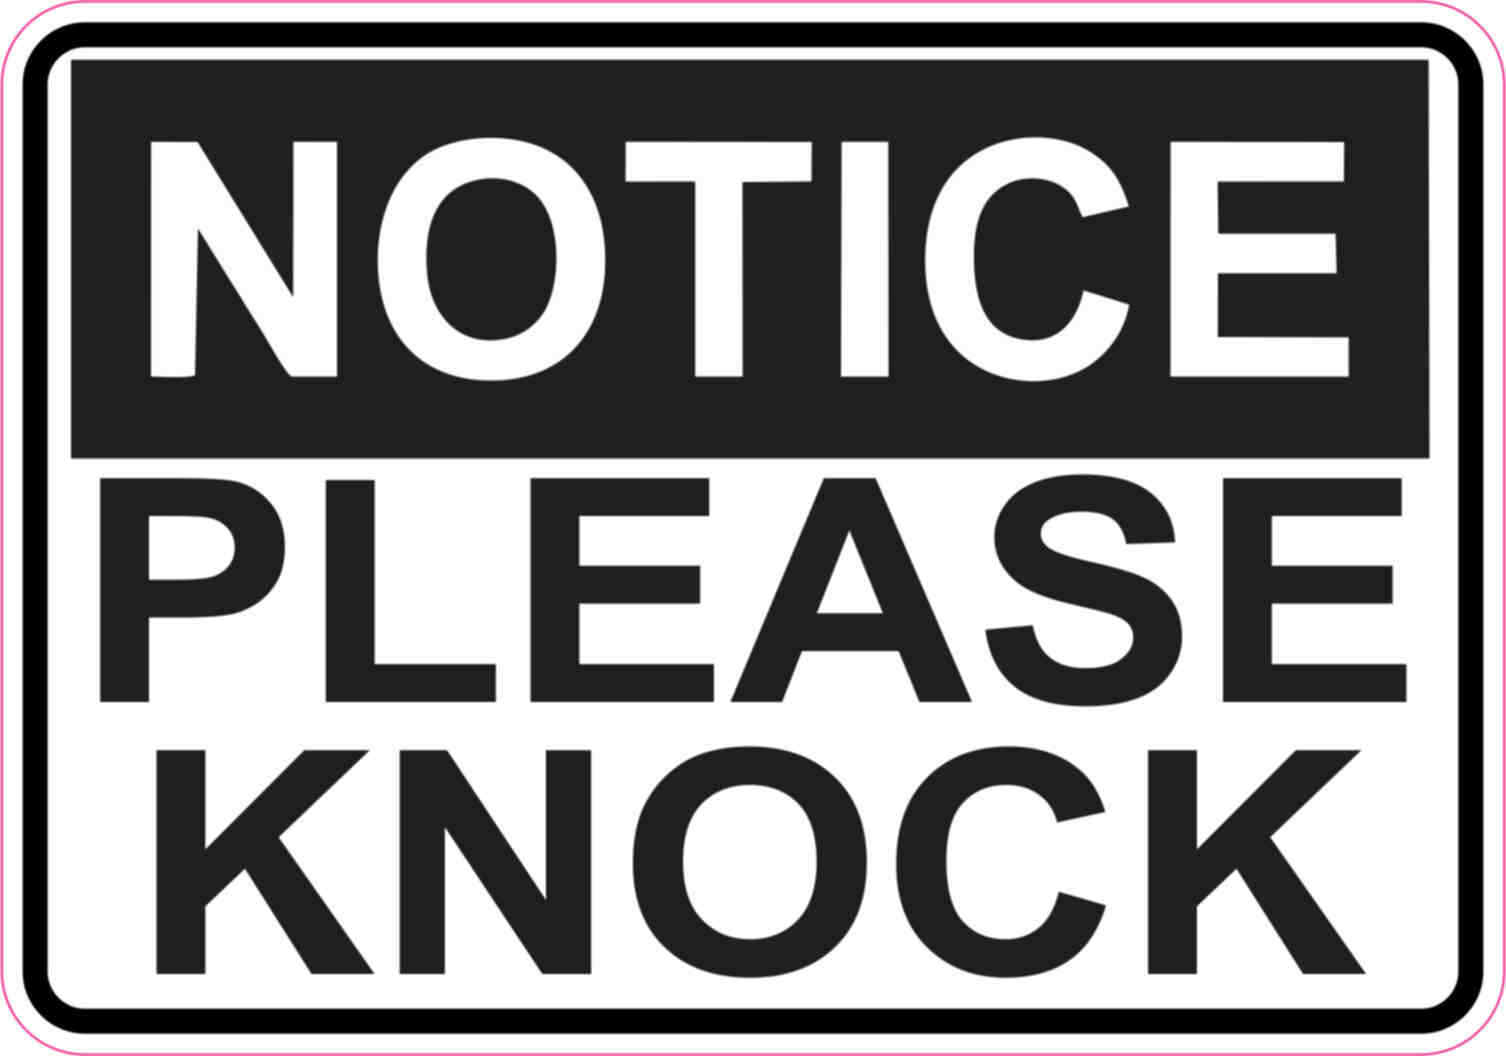 5in x 3.5in Notice Please Knock Sticker Vinyl Sign Stickers Business Door Signs